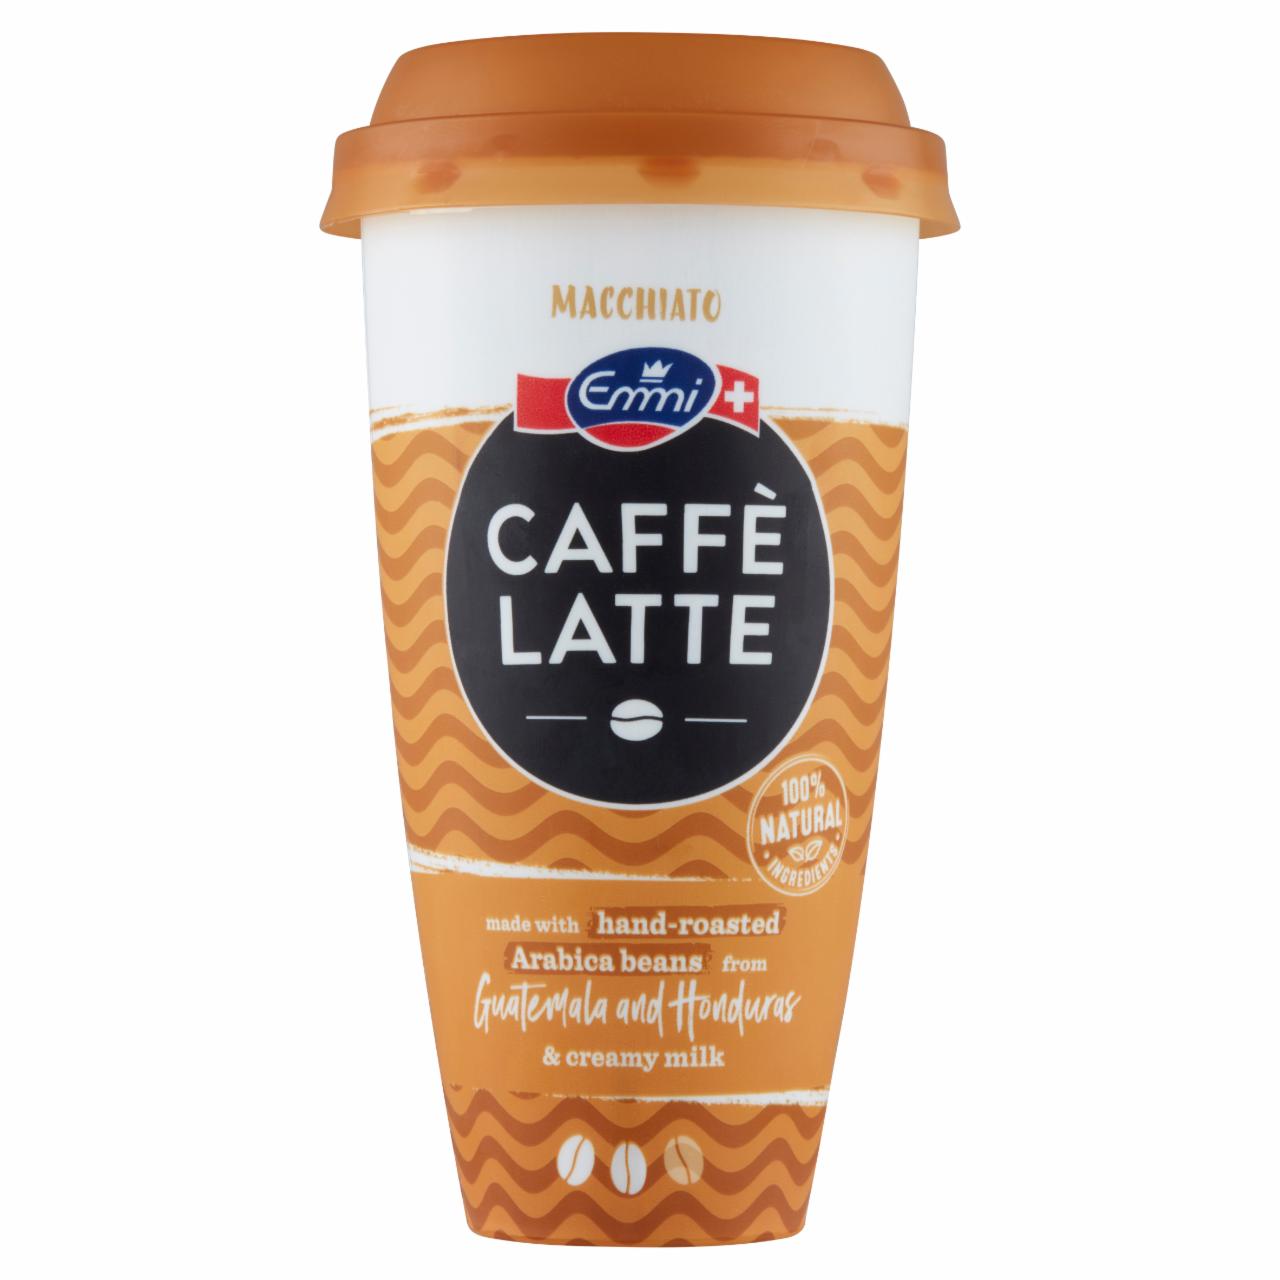 Képek - Emmi Caffé Latte Macchiato jegeskávé arab kávéval, tejjel és tejszínnel 230 ml